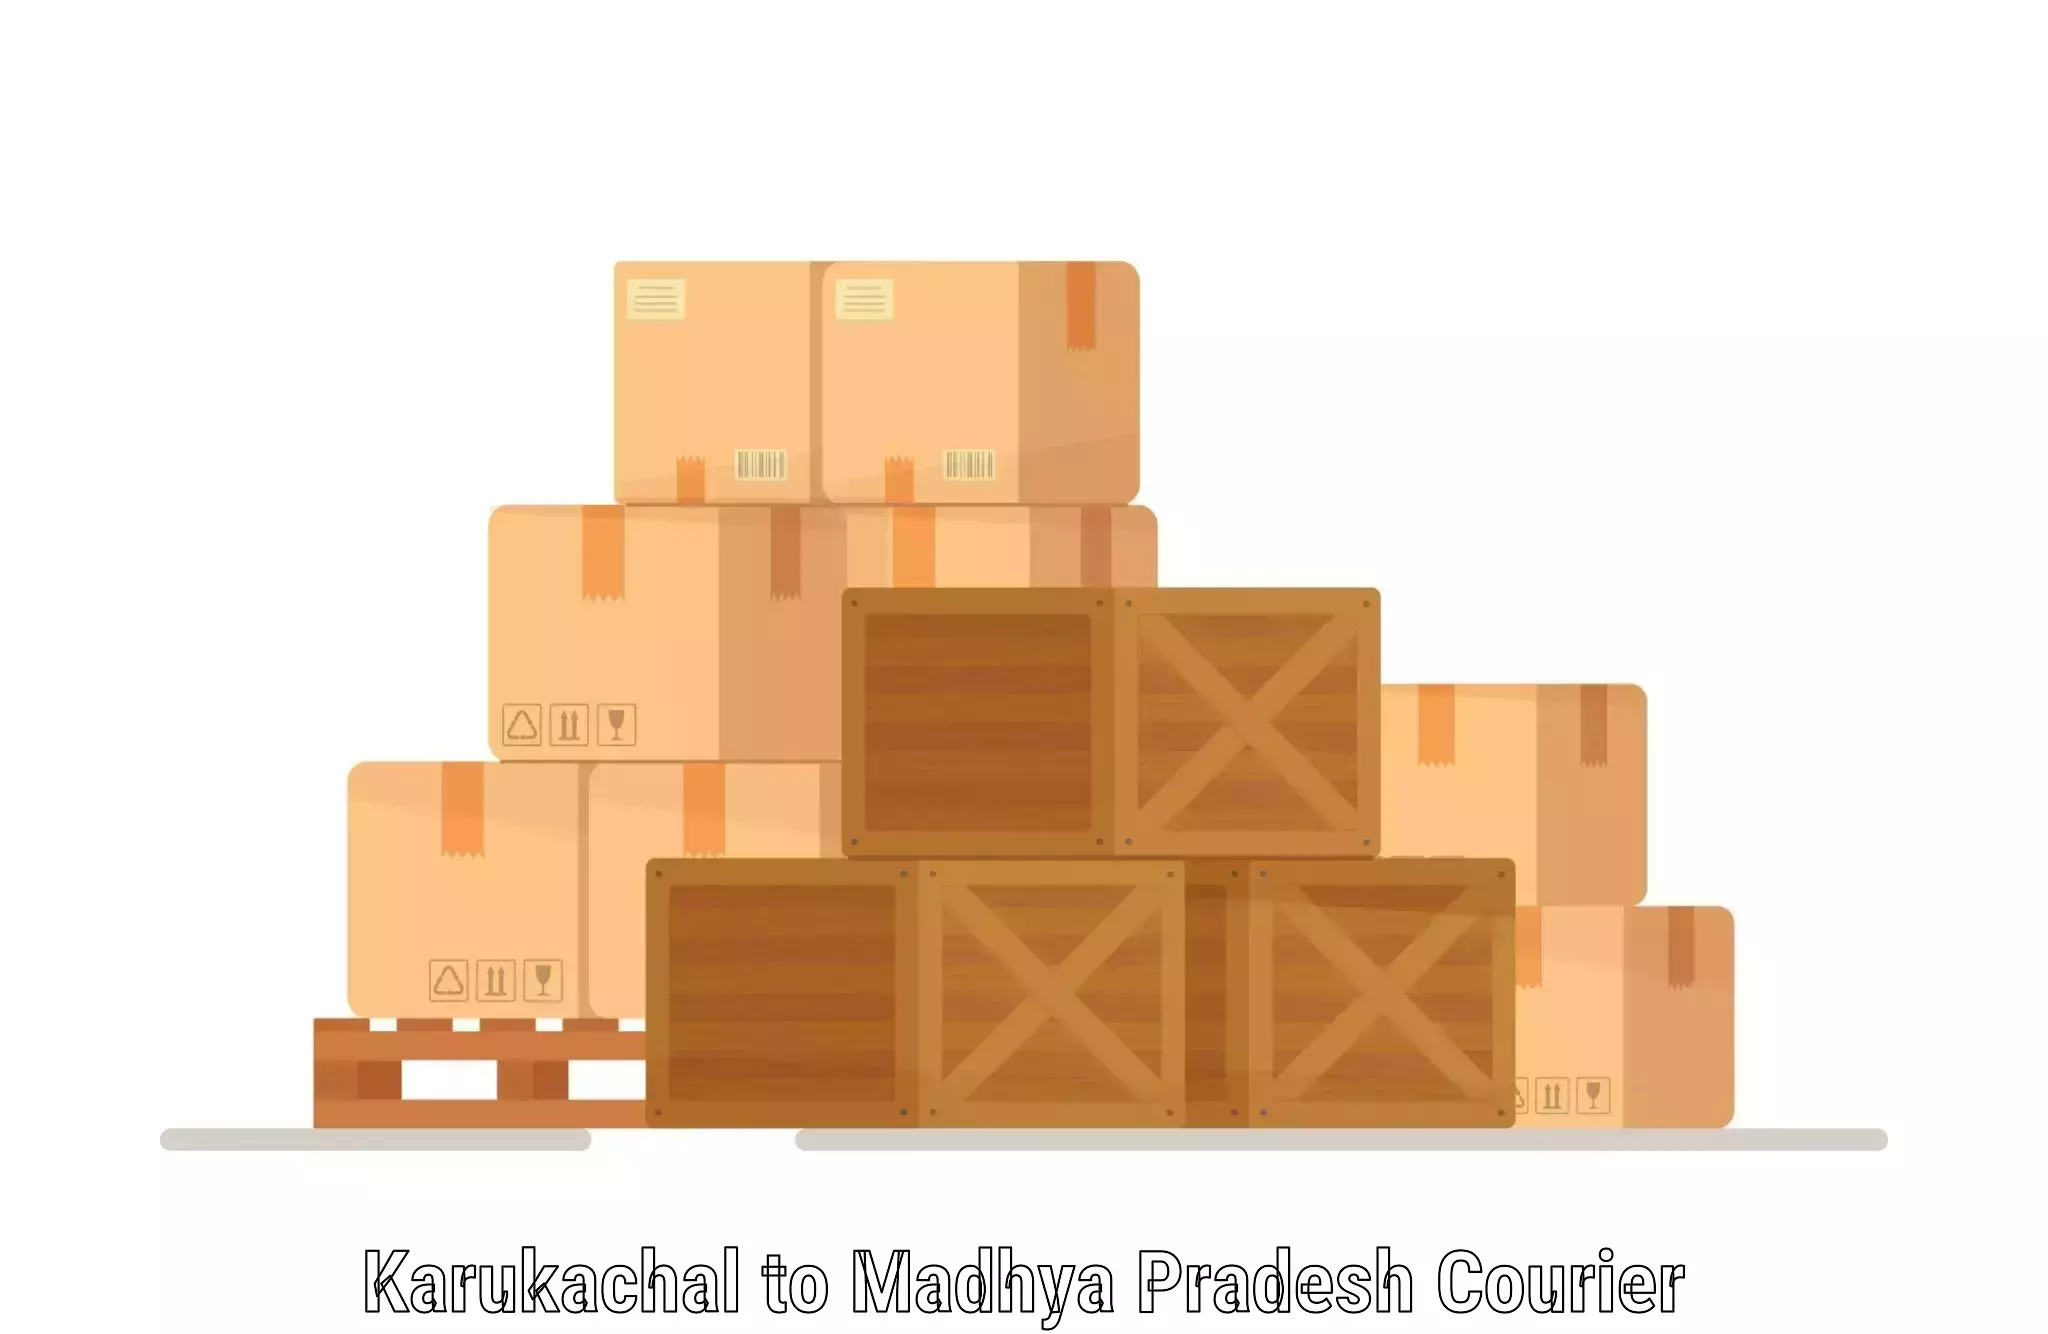 Urgent courier needs Karukachal to Udaipura